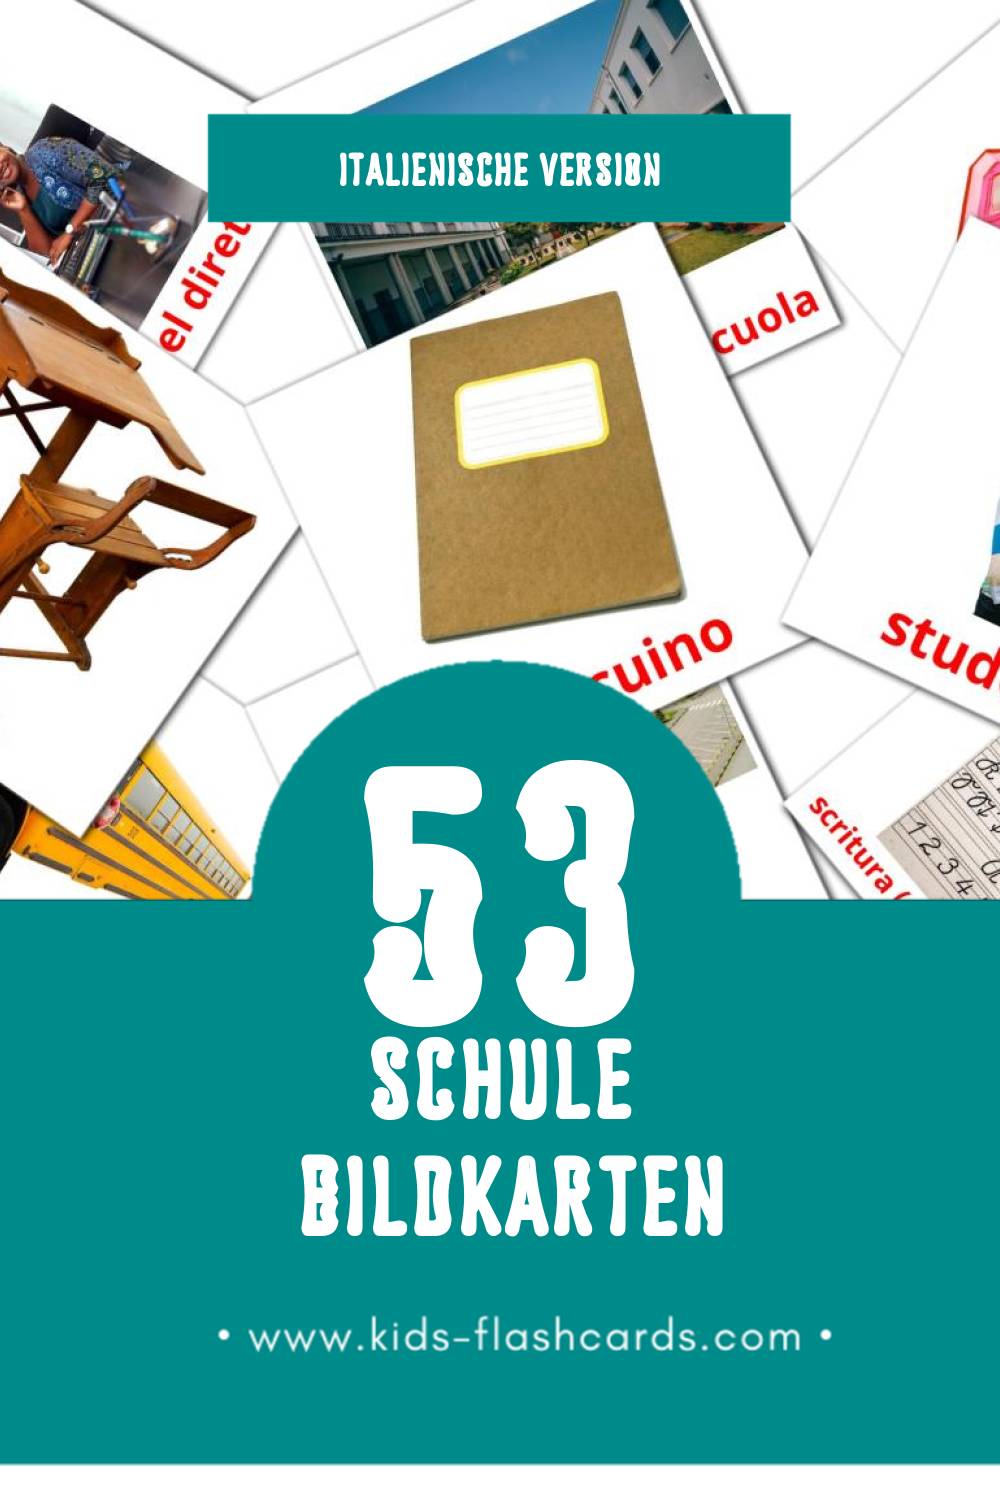 Visual Scuola Flashcards für Kleinkinder (53 Karten in Italienisch)